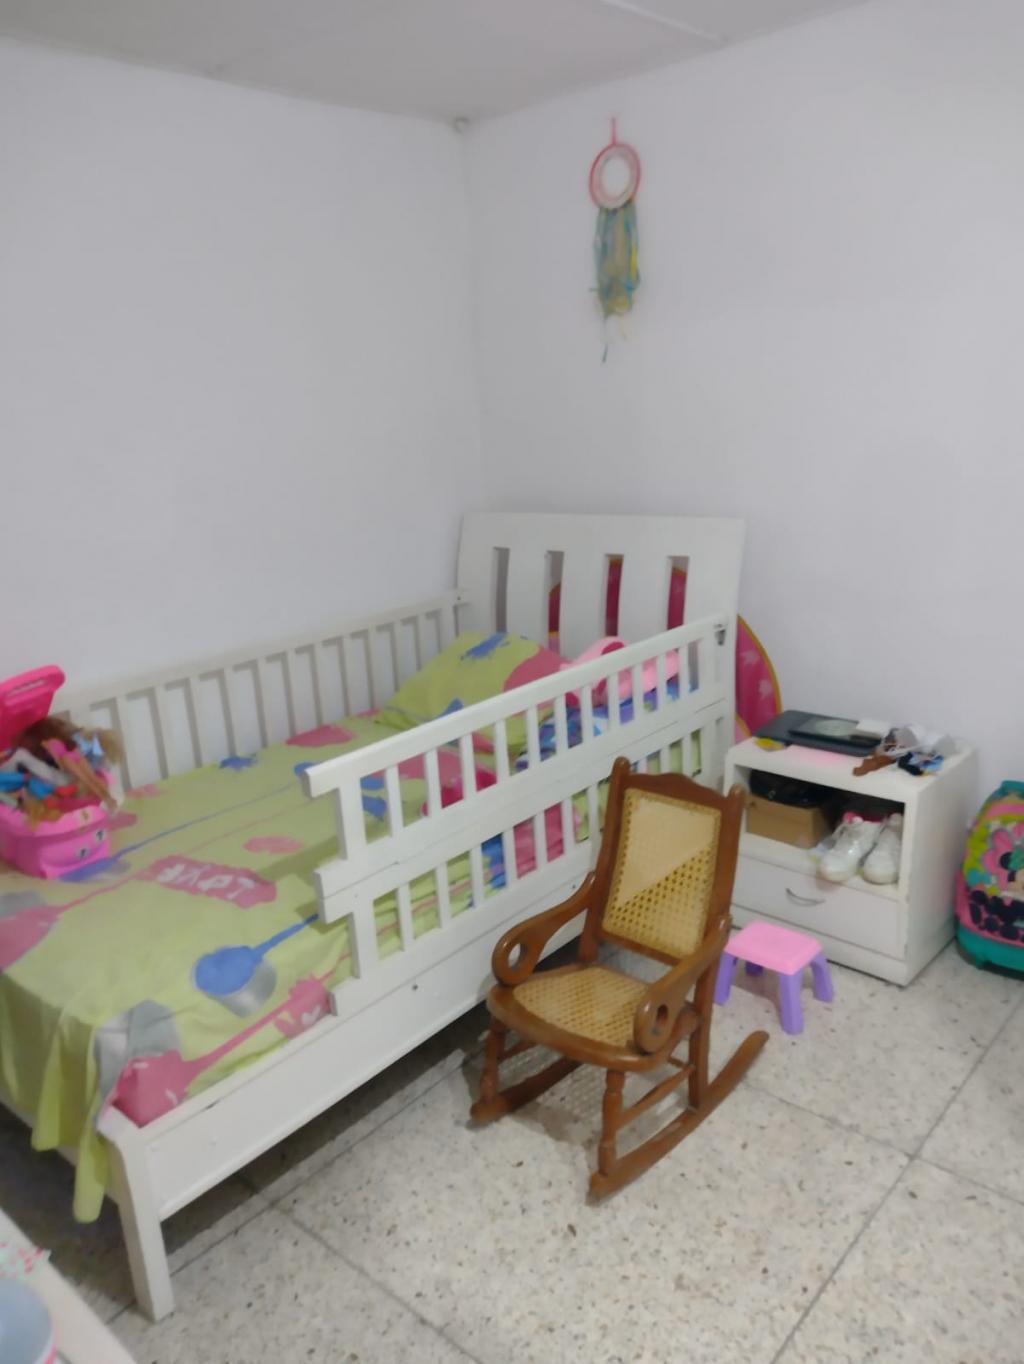 Apartamento en Arriendo por Bienco S.A ubicado en Barranquilla. El código del inmueble es: 7370202 Imágen 11